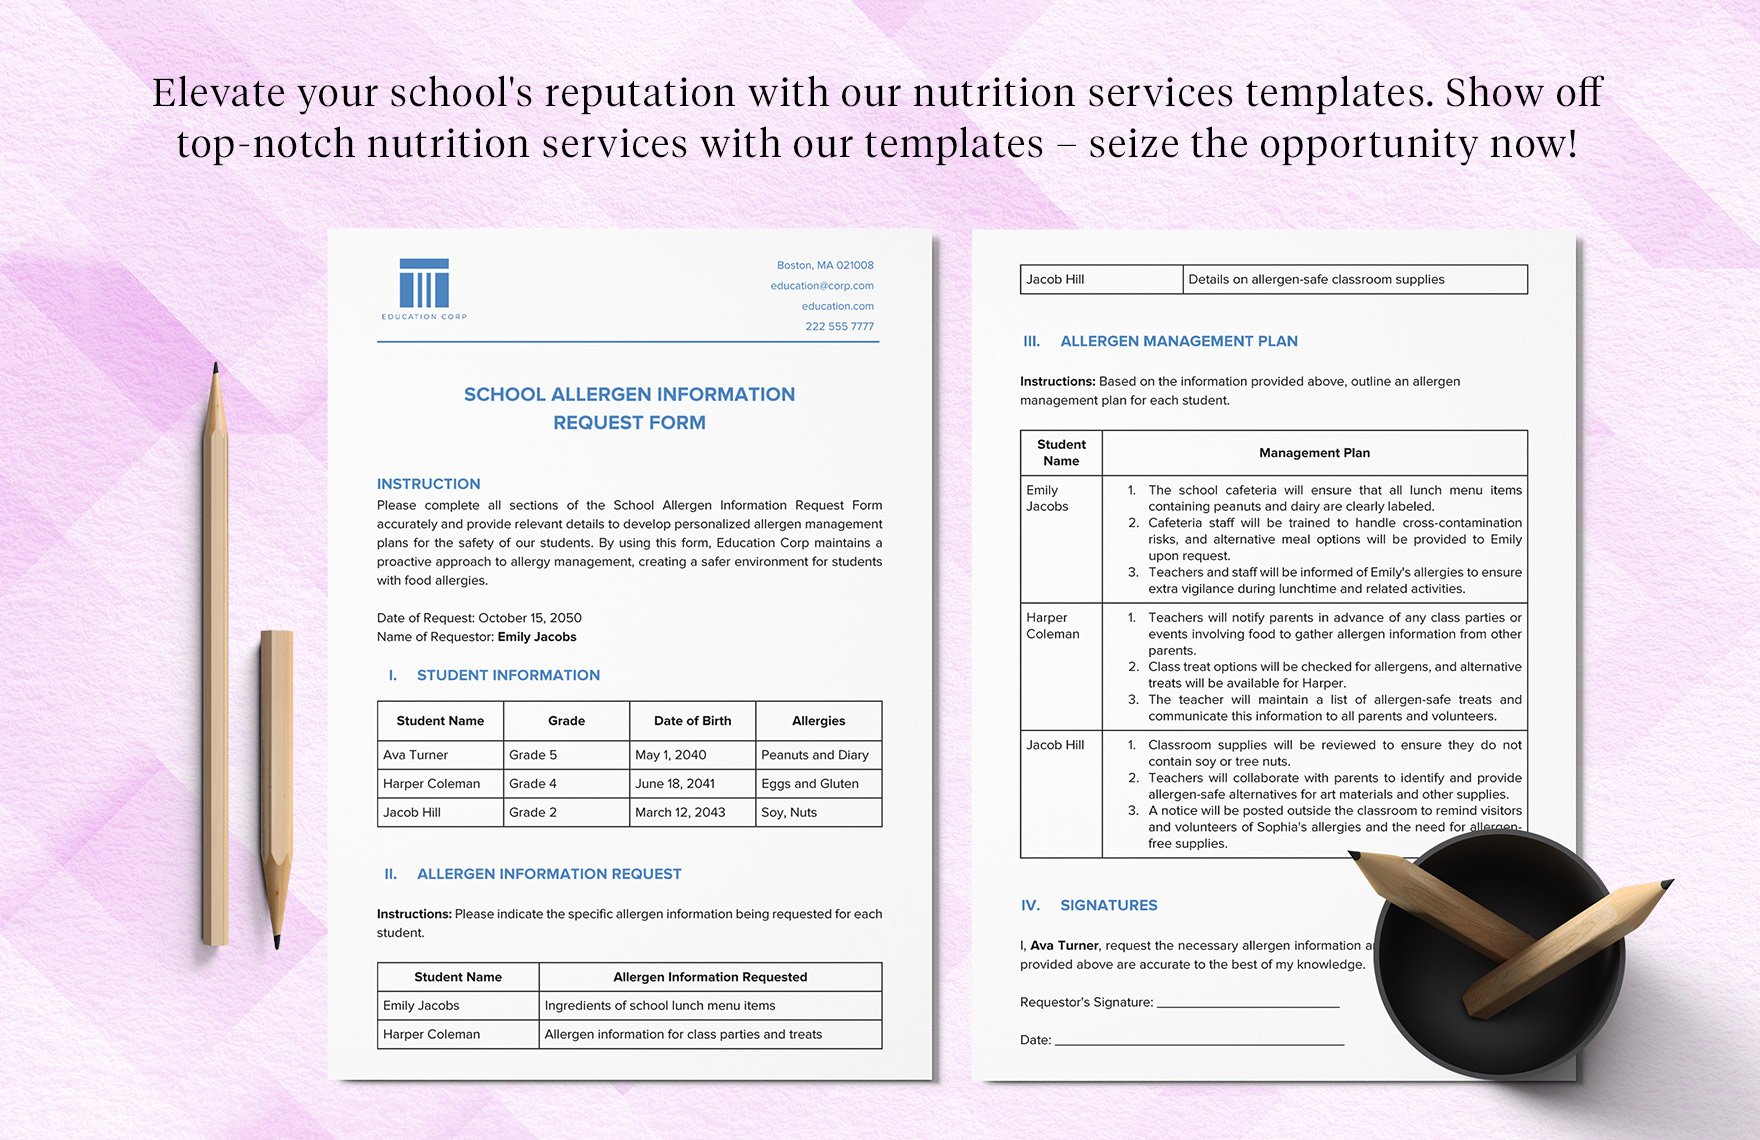 School Allergen Information Request Form Template